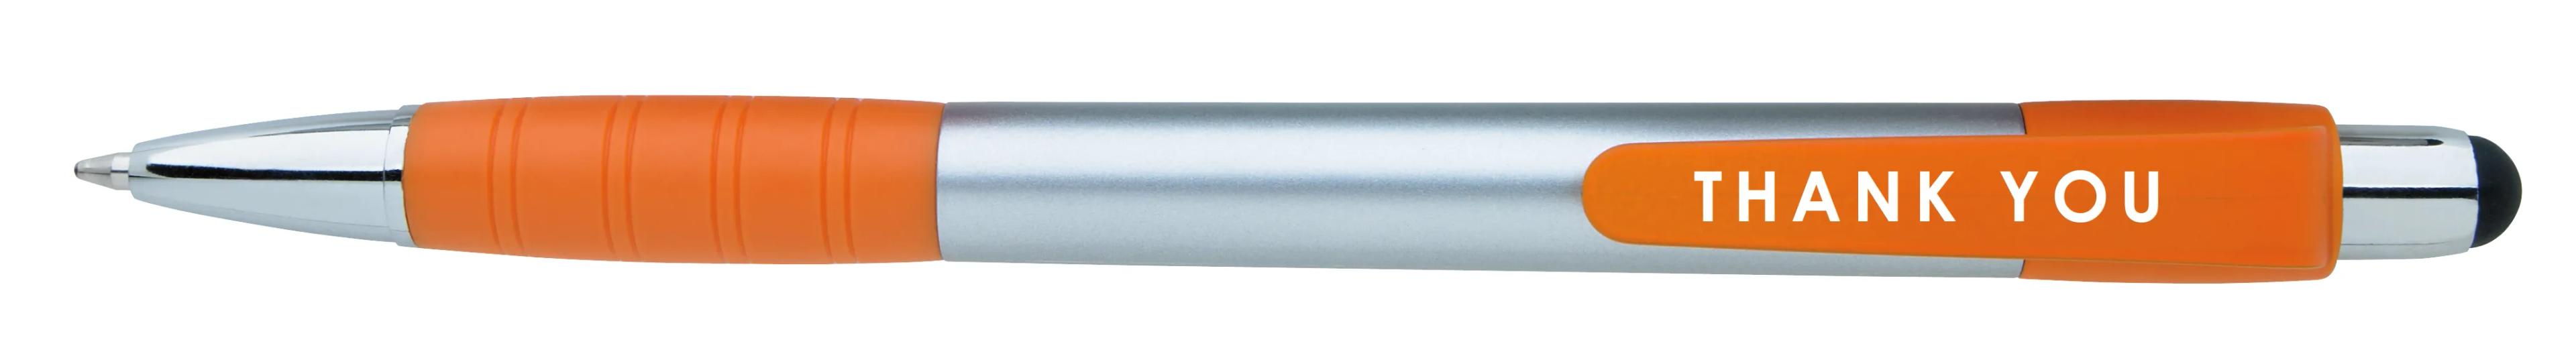 Silver Element Stylus Pen 42 of 53